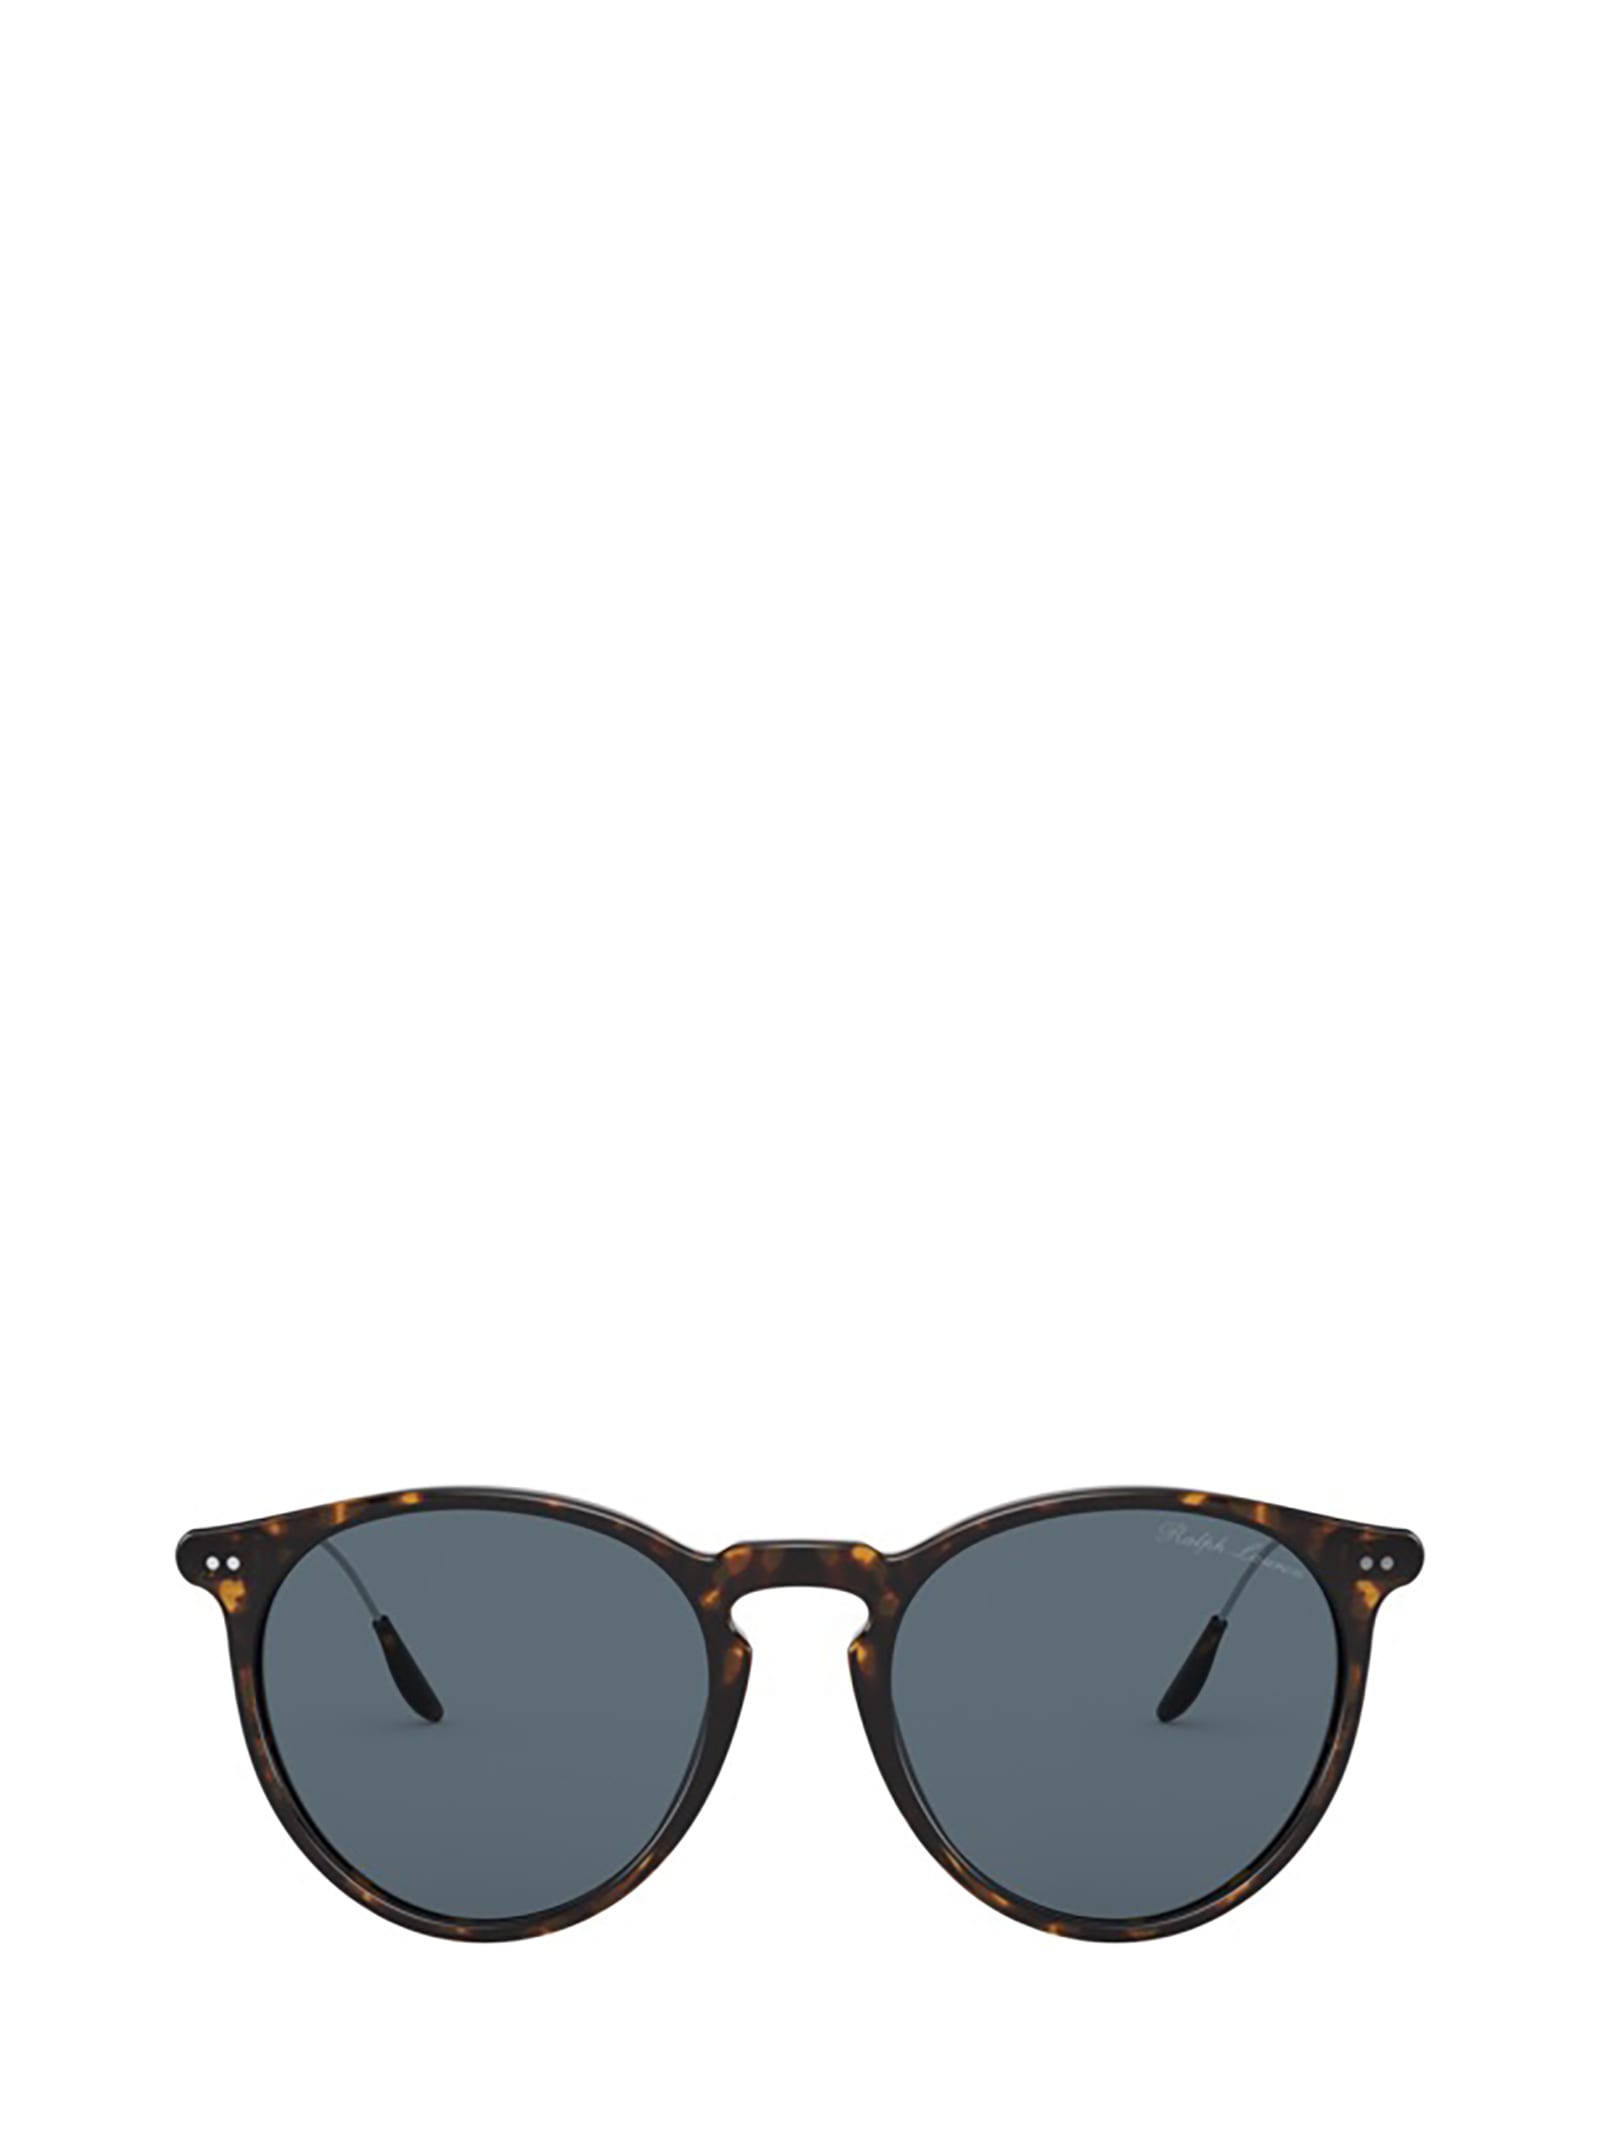 Ralph Lauren Ralph Lauren Rl8181p Shiny Dark Havana Sunglasses